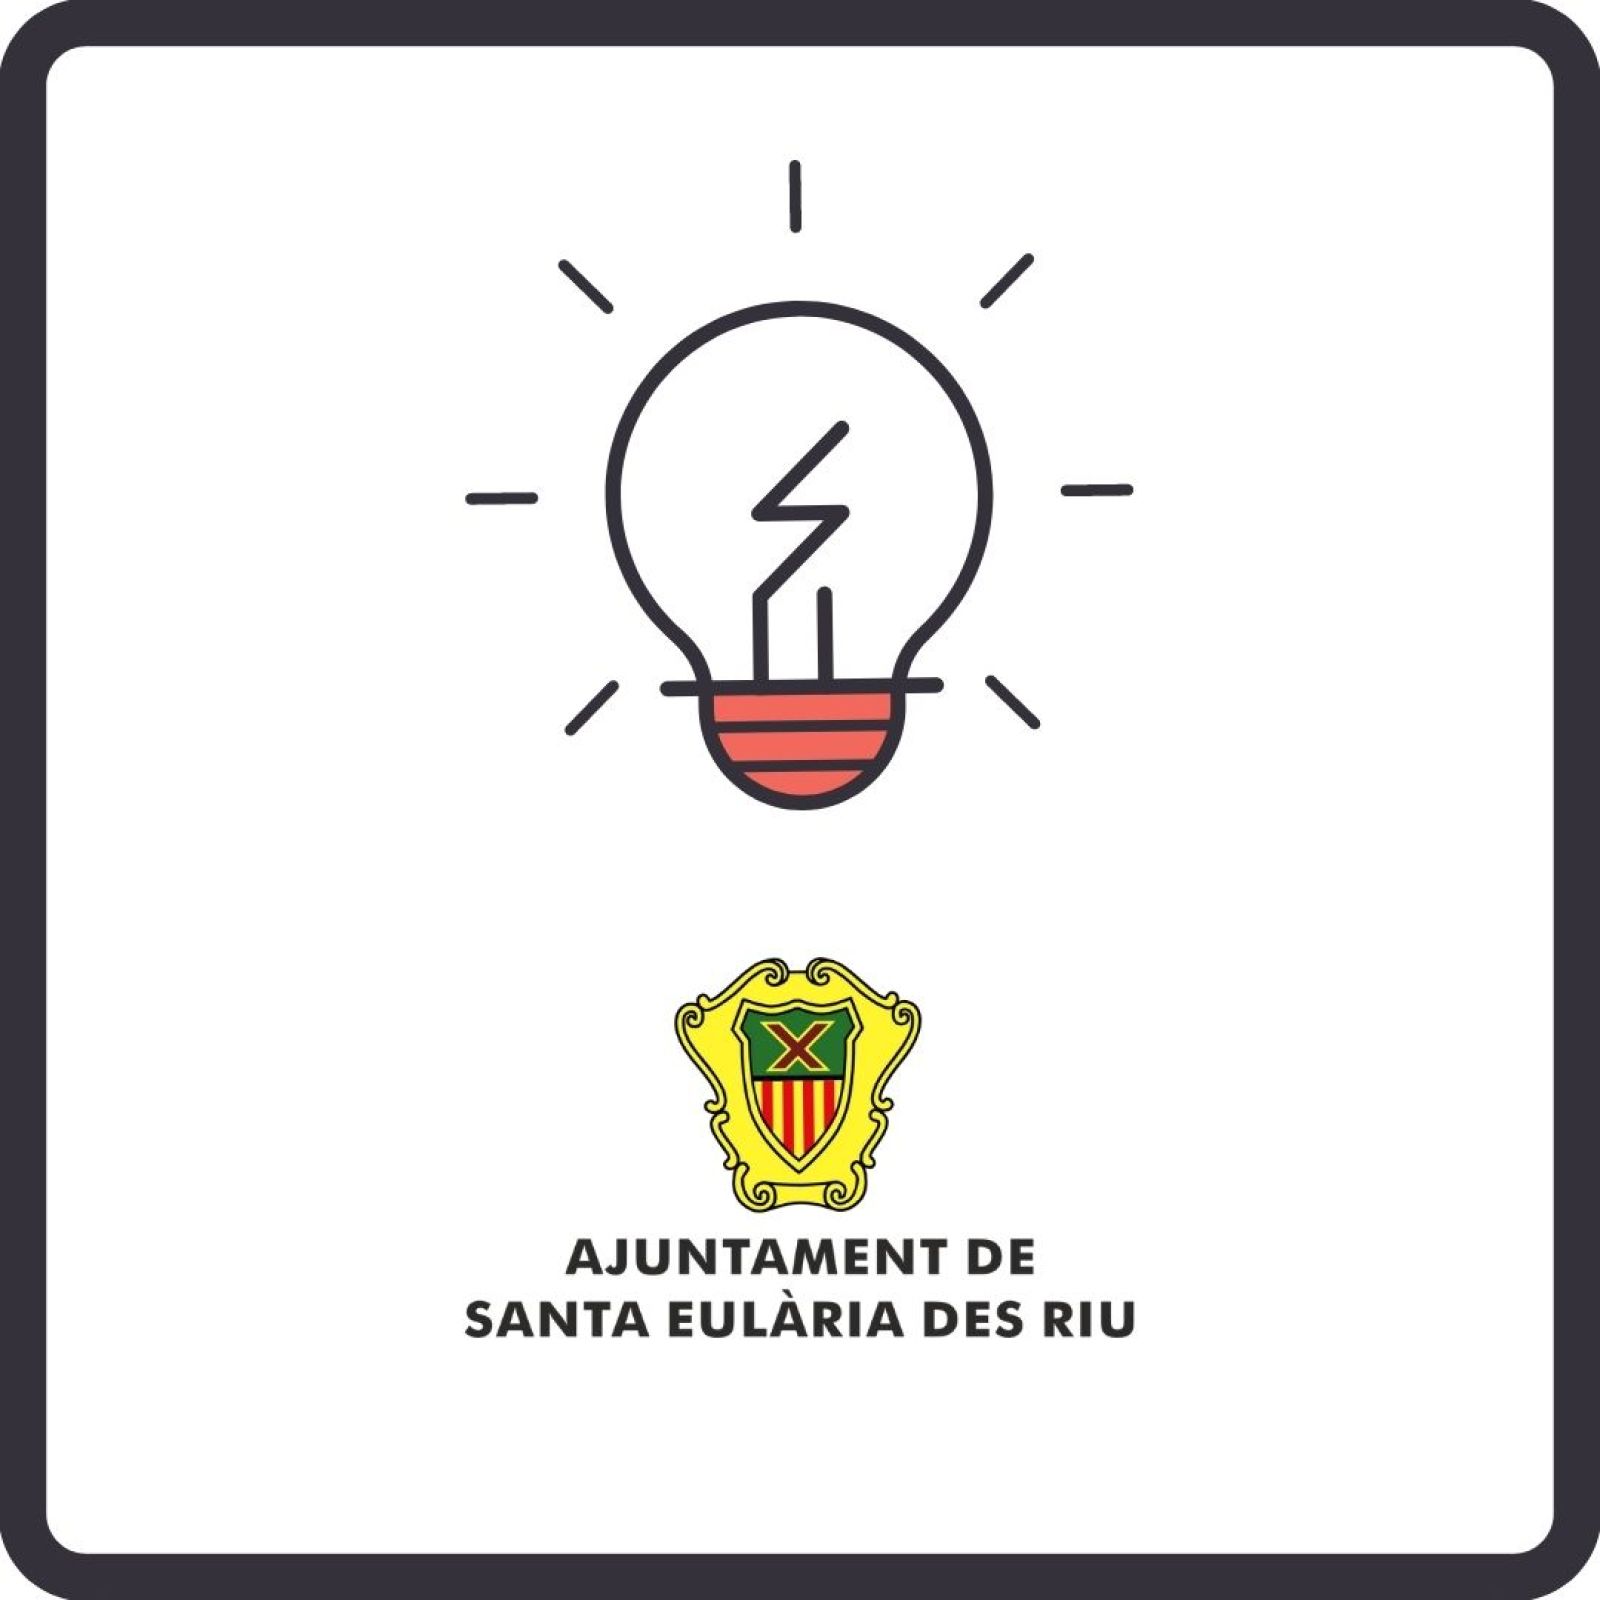 Corte temporal del suministro de energía eléctrica en diferentes zonas de Santa Eulària des Riu el día 16 de septiembre